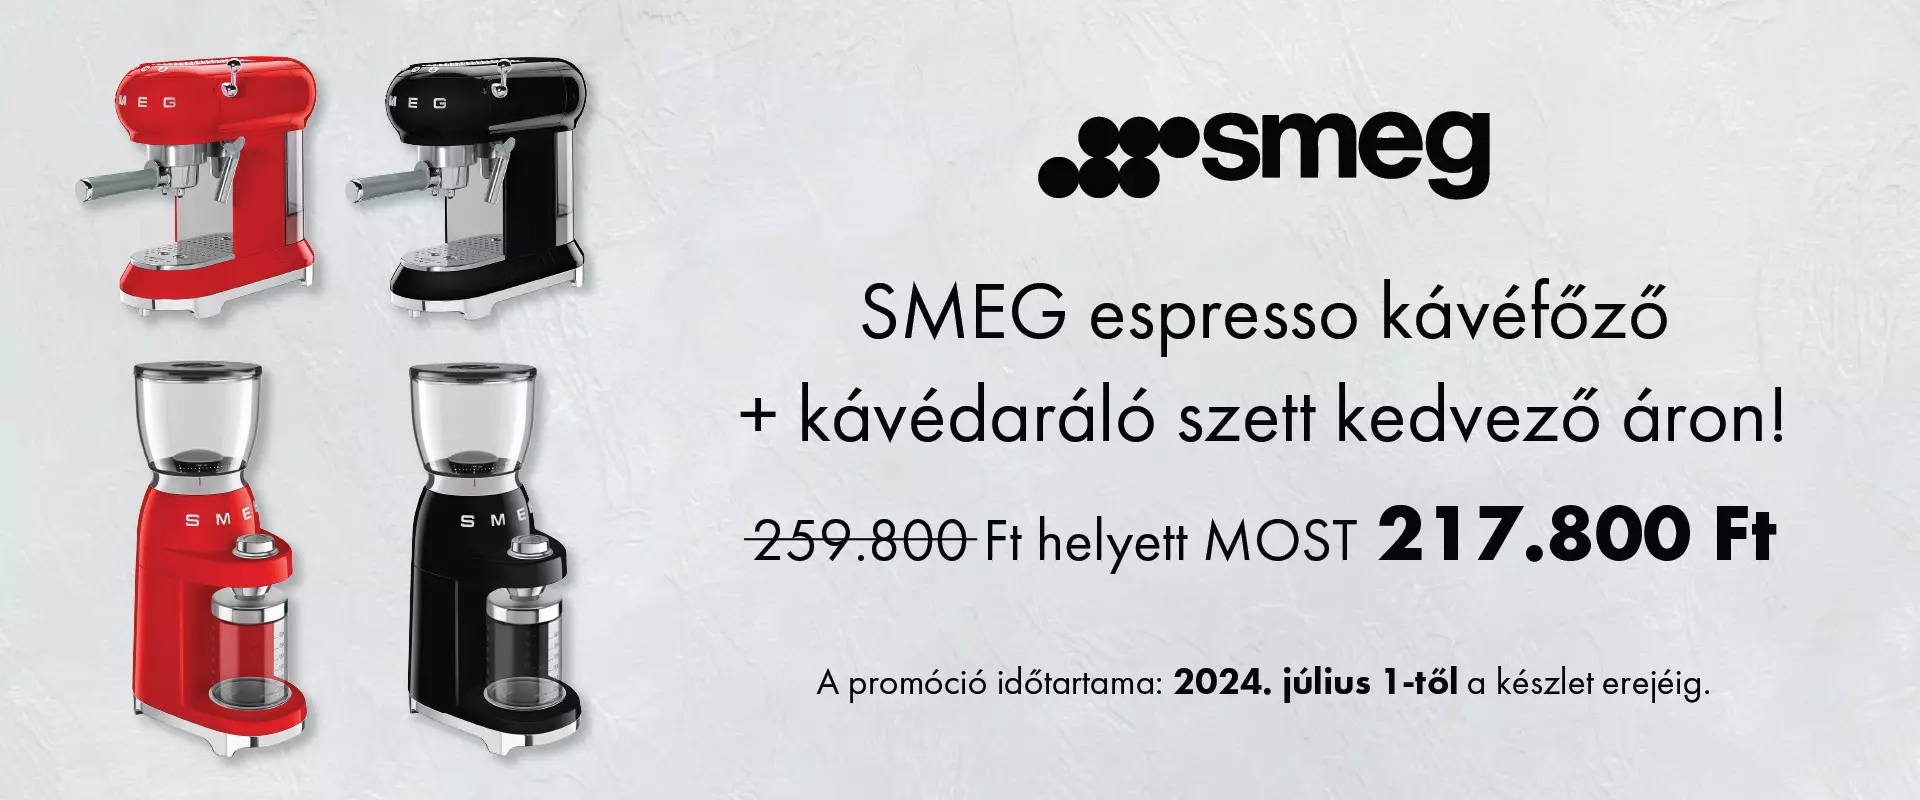 SMEG espresso kávéfőző + kávédaráló szett kedvező áron!